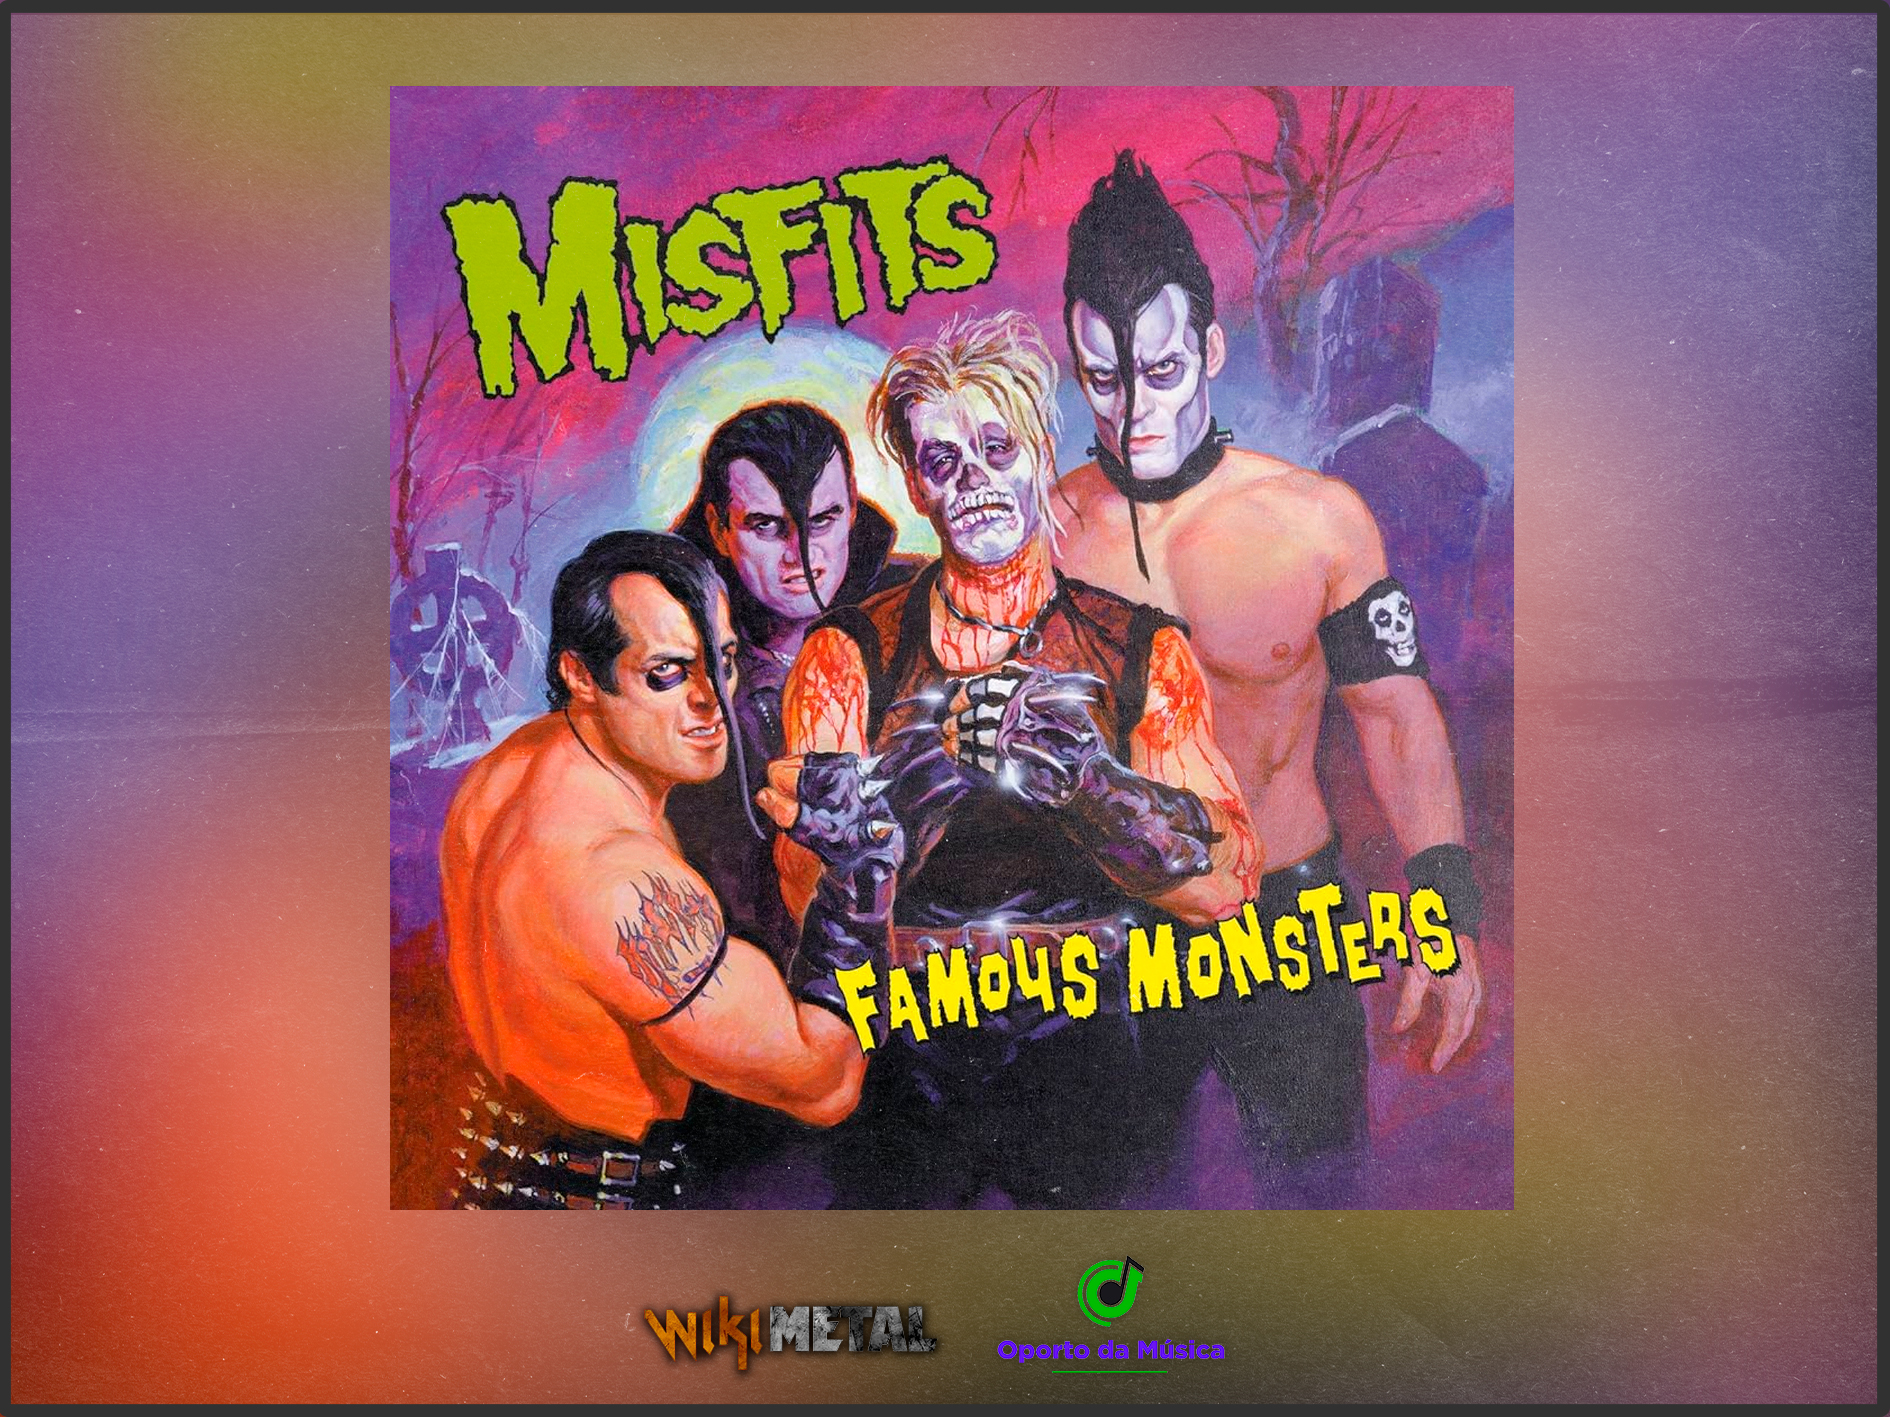 Clássico do Misfits, “Famous Monsters” ganha nova edição no Brasil